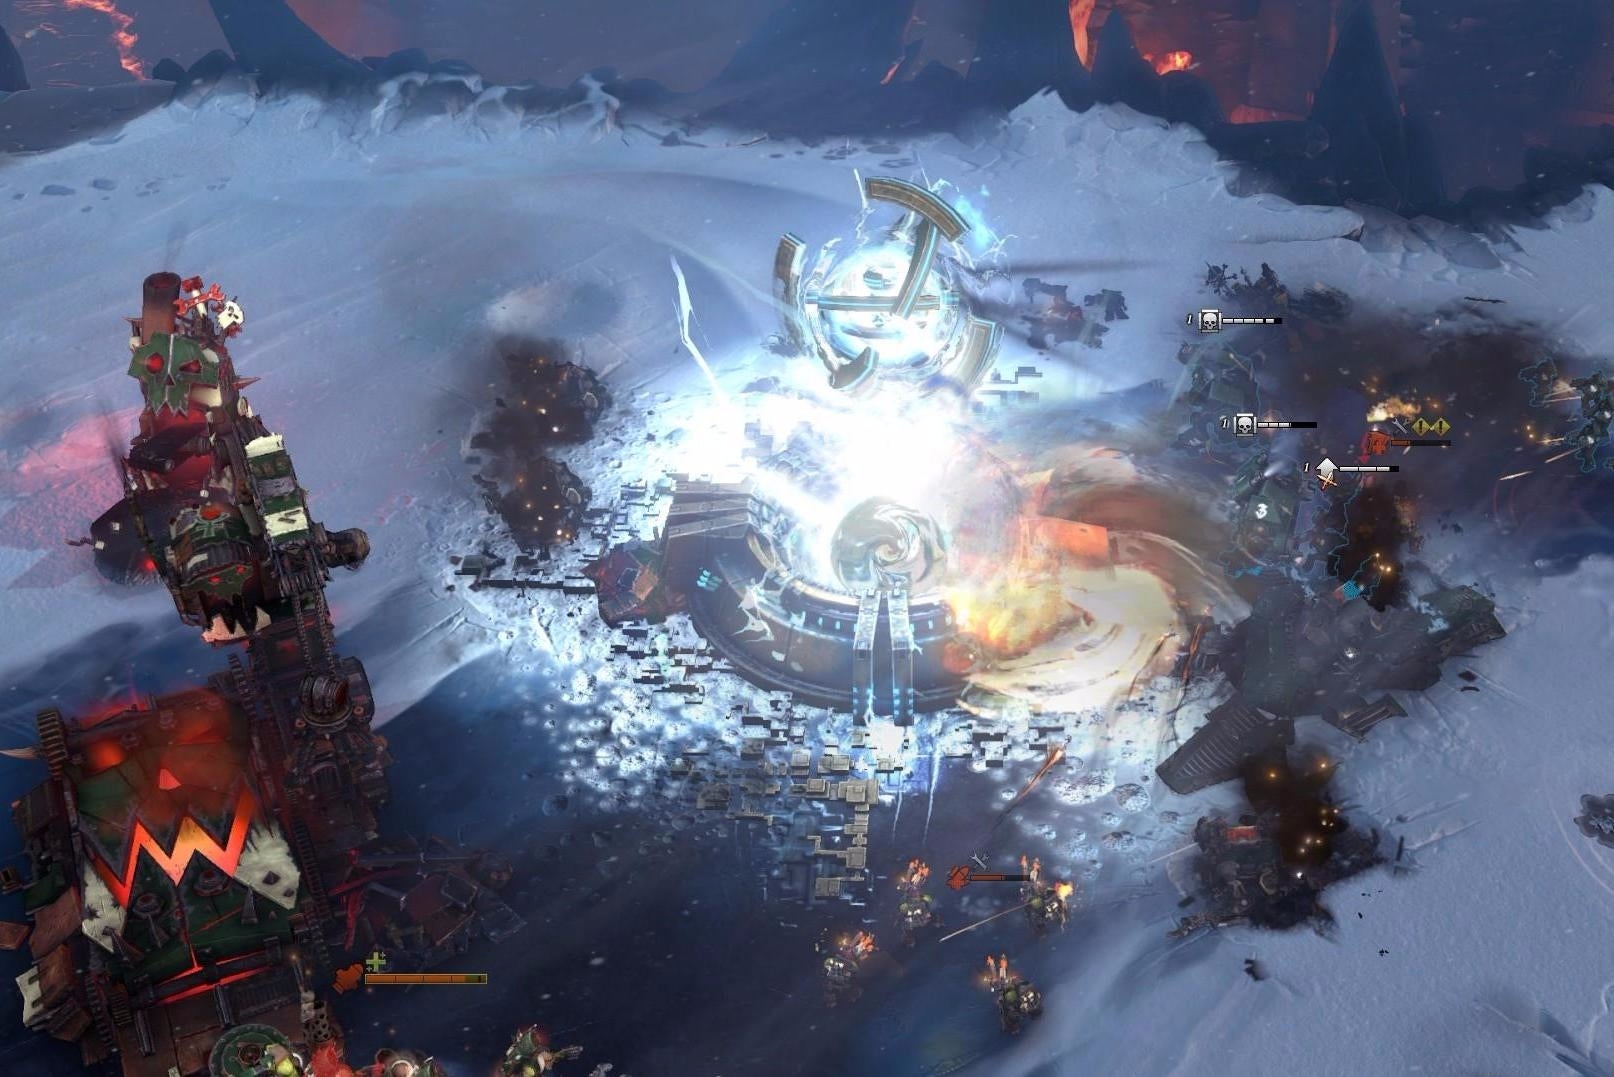 Immagine di Warhammer 40,000: Dawn of War III, un video ci mostra un match in multiplayer 3 vs 3